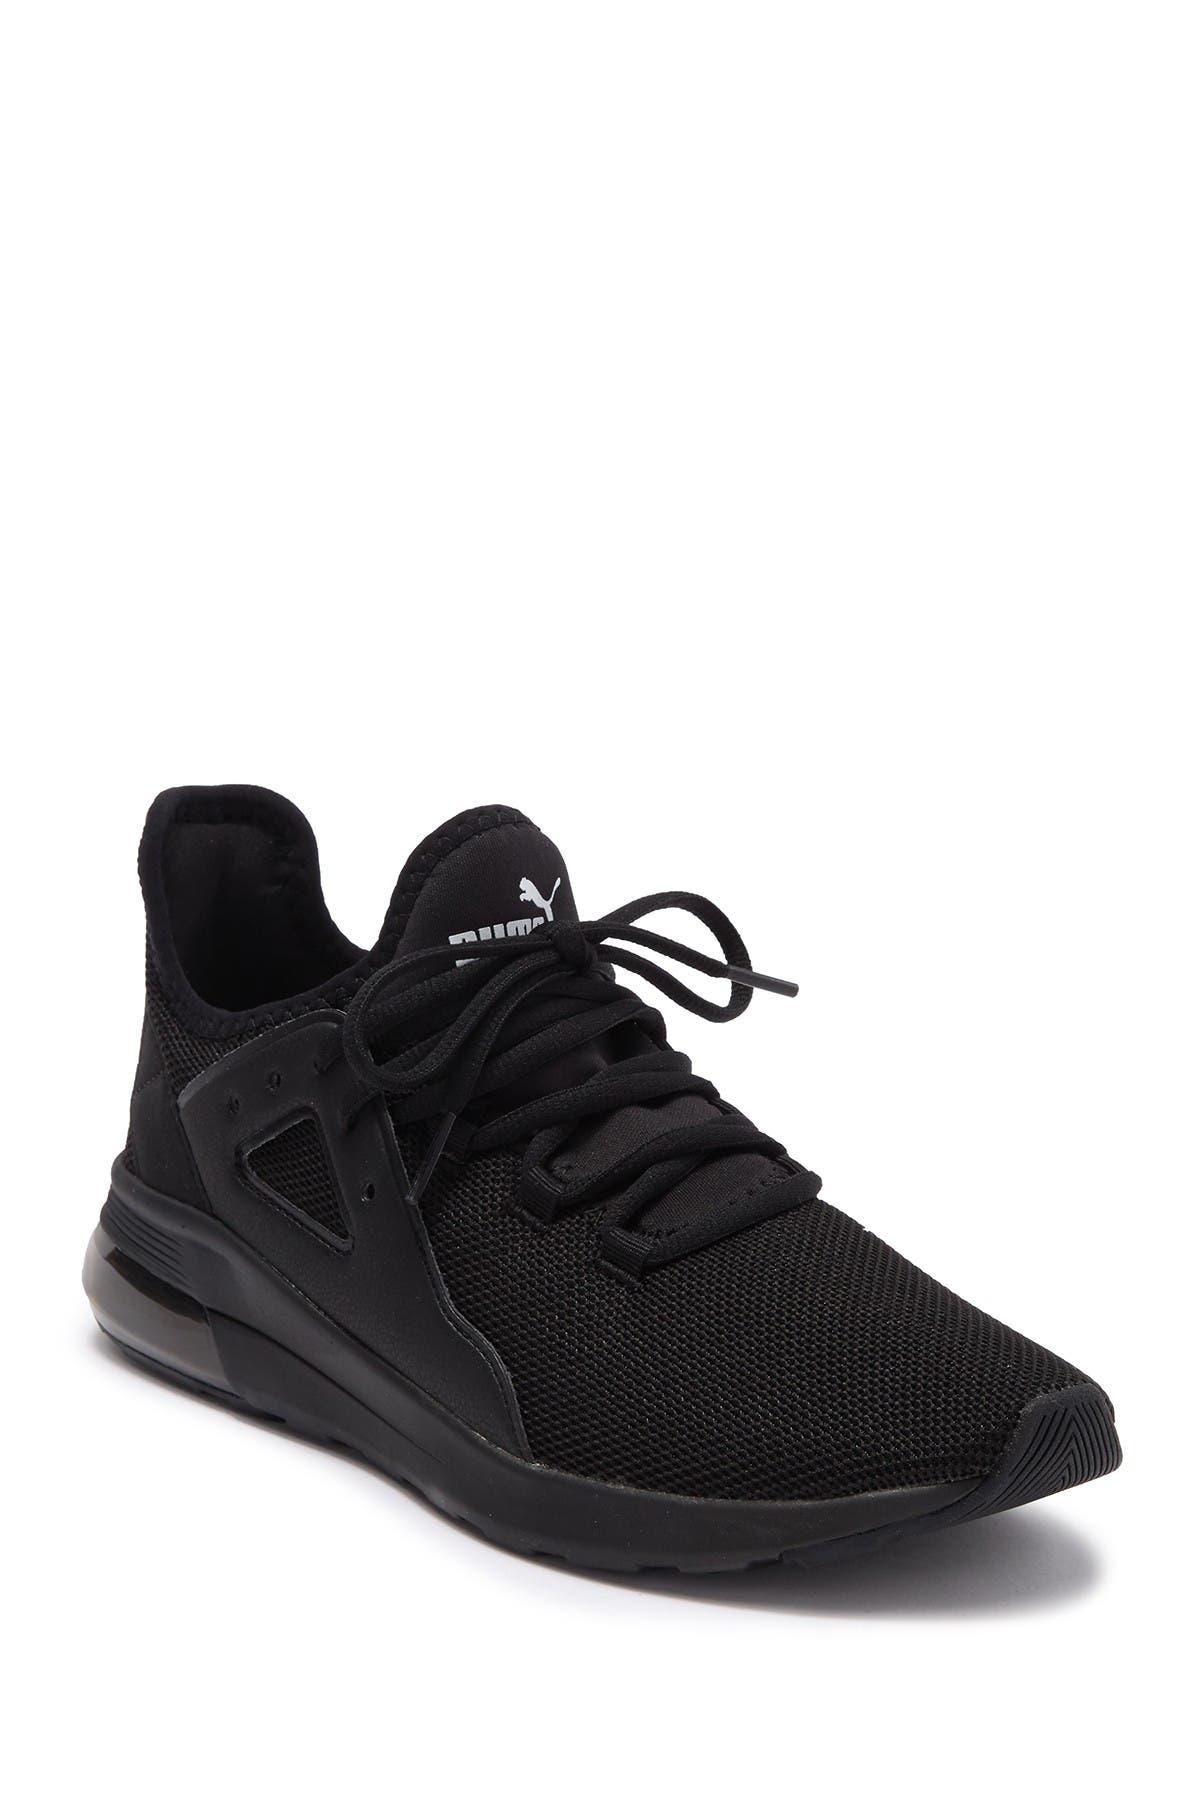 PUMA Electron Street Men's Sneakers in Black | Lyst